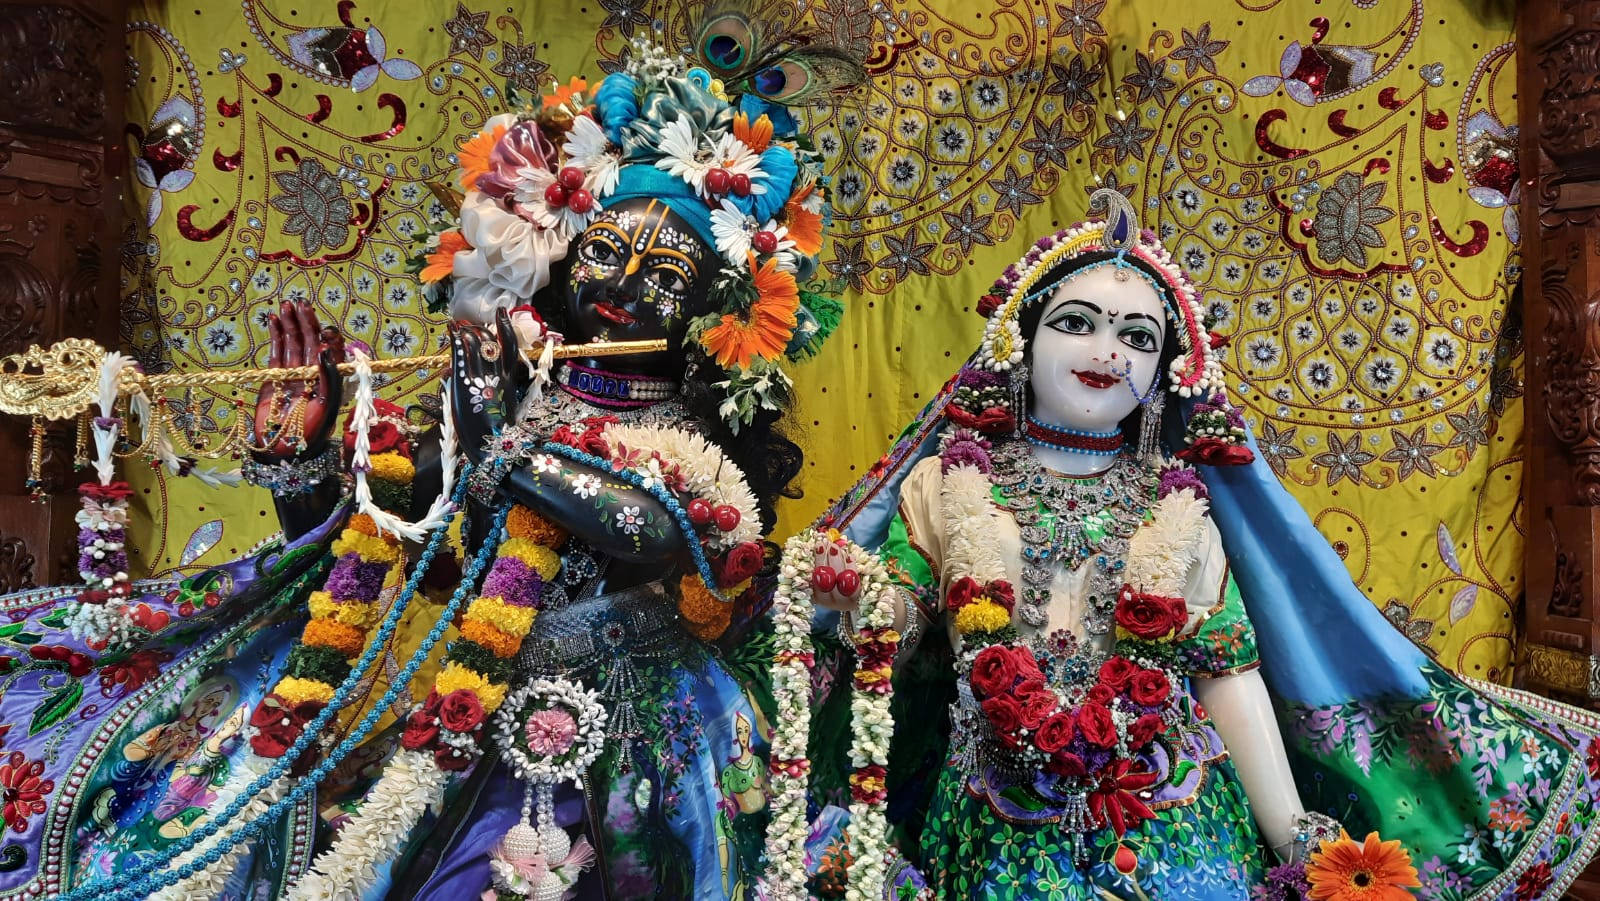 Lord Krishna And Radha Rani In Iskcon Temple Wallpaper